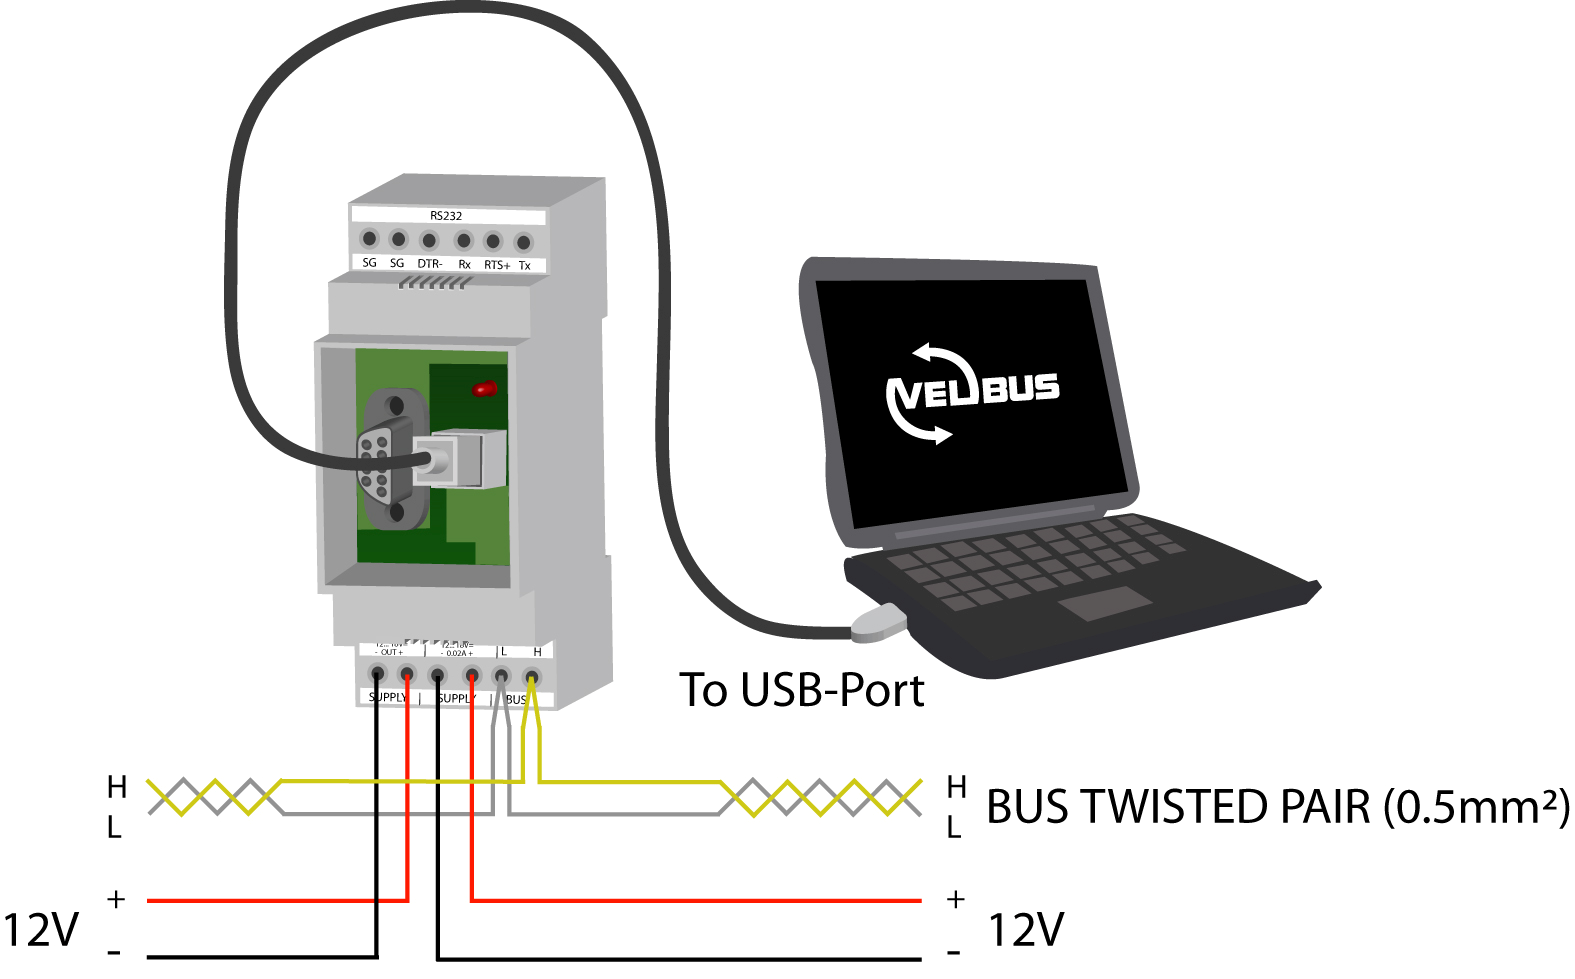 Via de USB-poort Verbind de module met een USB-poort van de computer. U kunt hiervoor één van de volgende USB kabeltypes van Velleman gebruiken: CW076, CW077, CW078, CW090A, CW090B of CW090C.